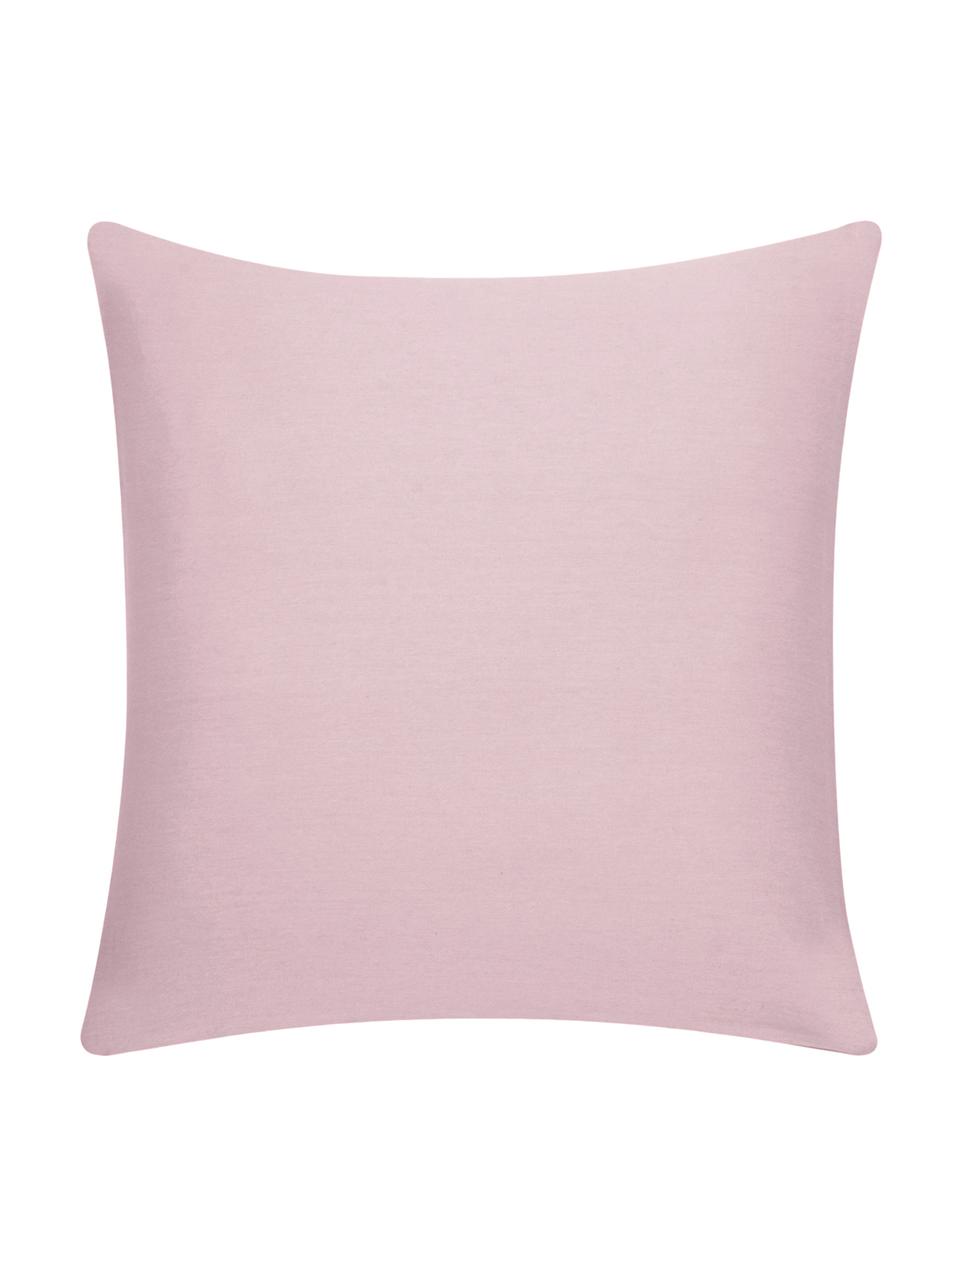 Poszewka na poduszkę z bawełny Mads, 100% bawełna, Blady różowy, S 40 x D 40 cm